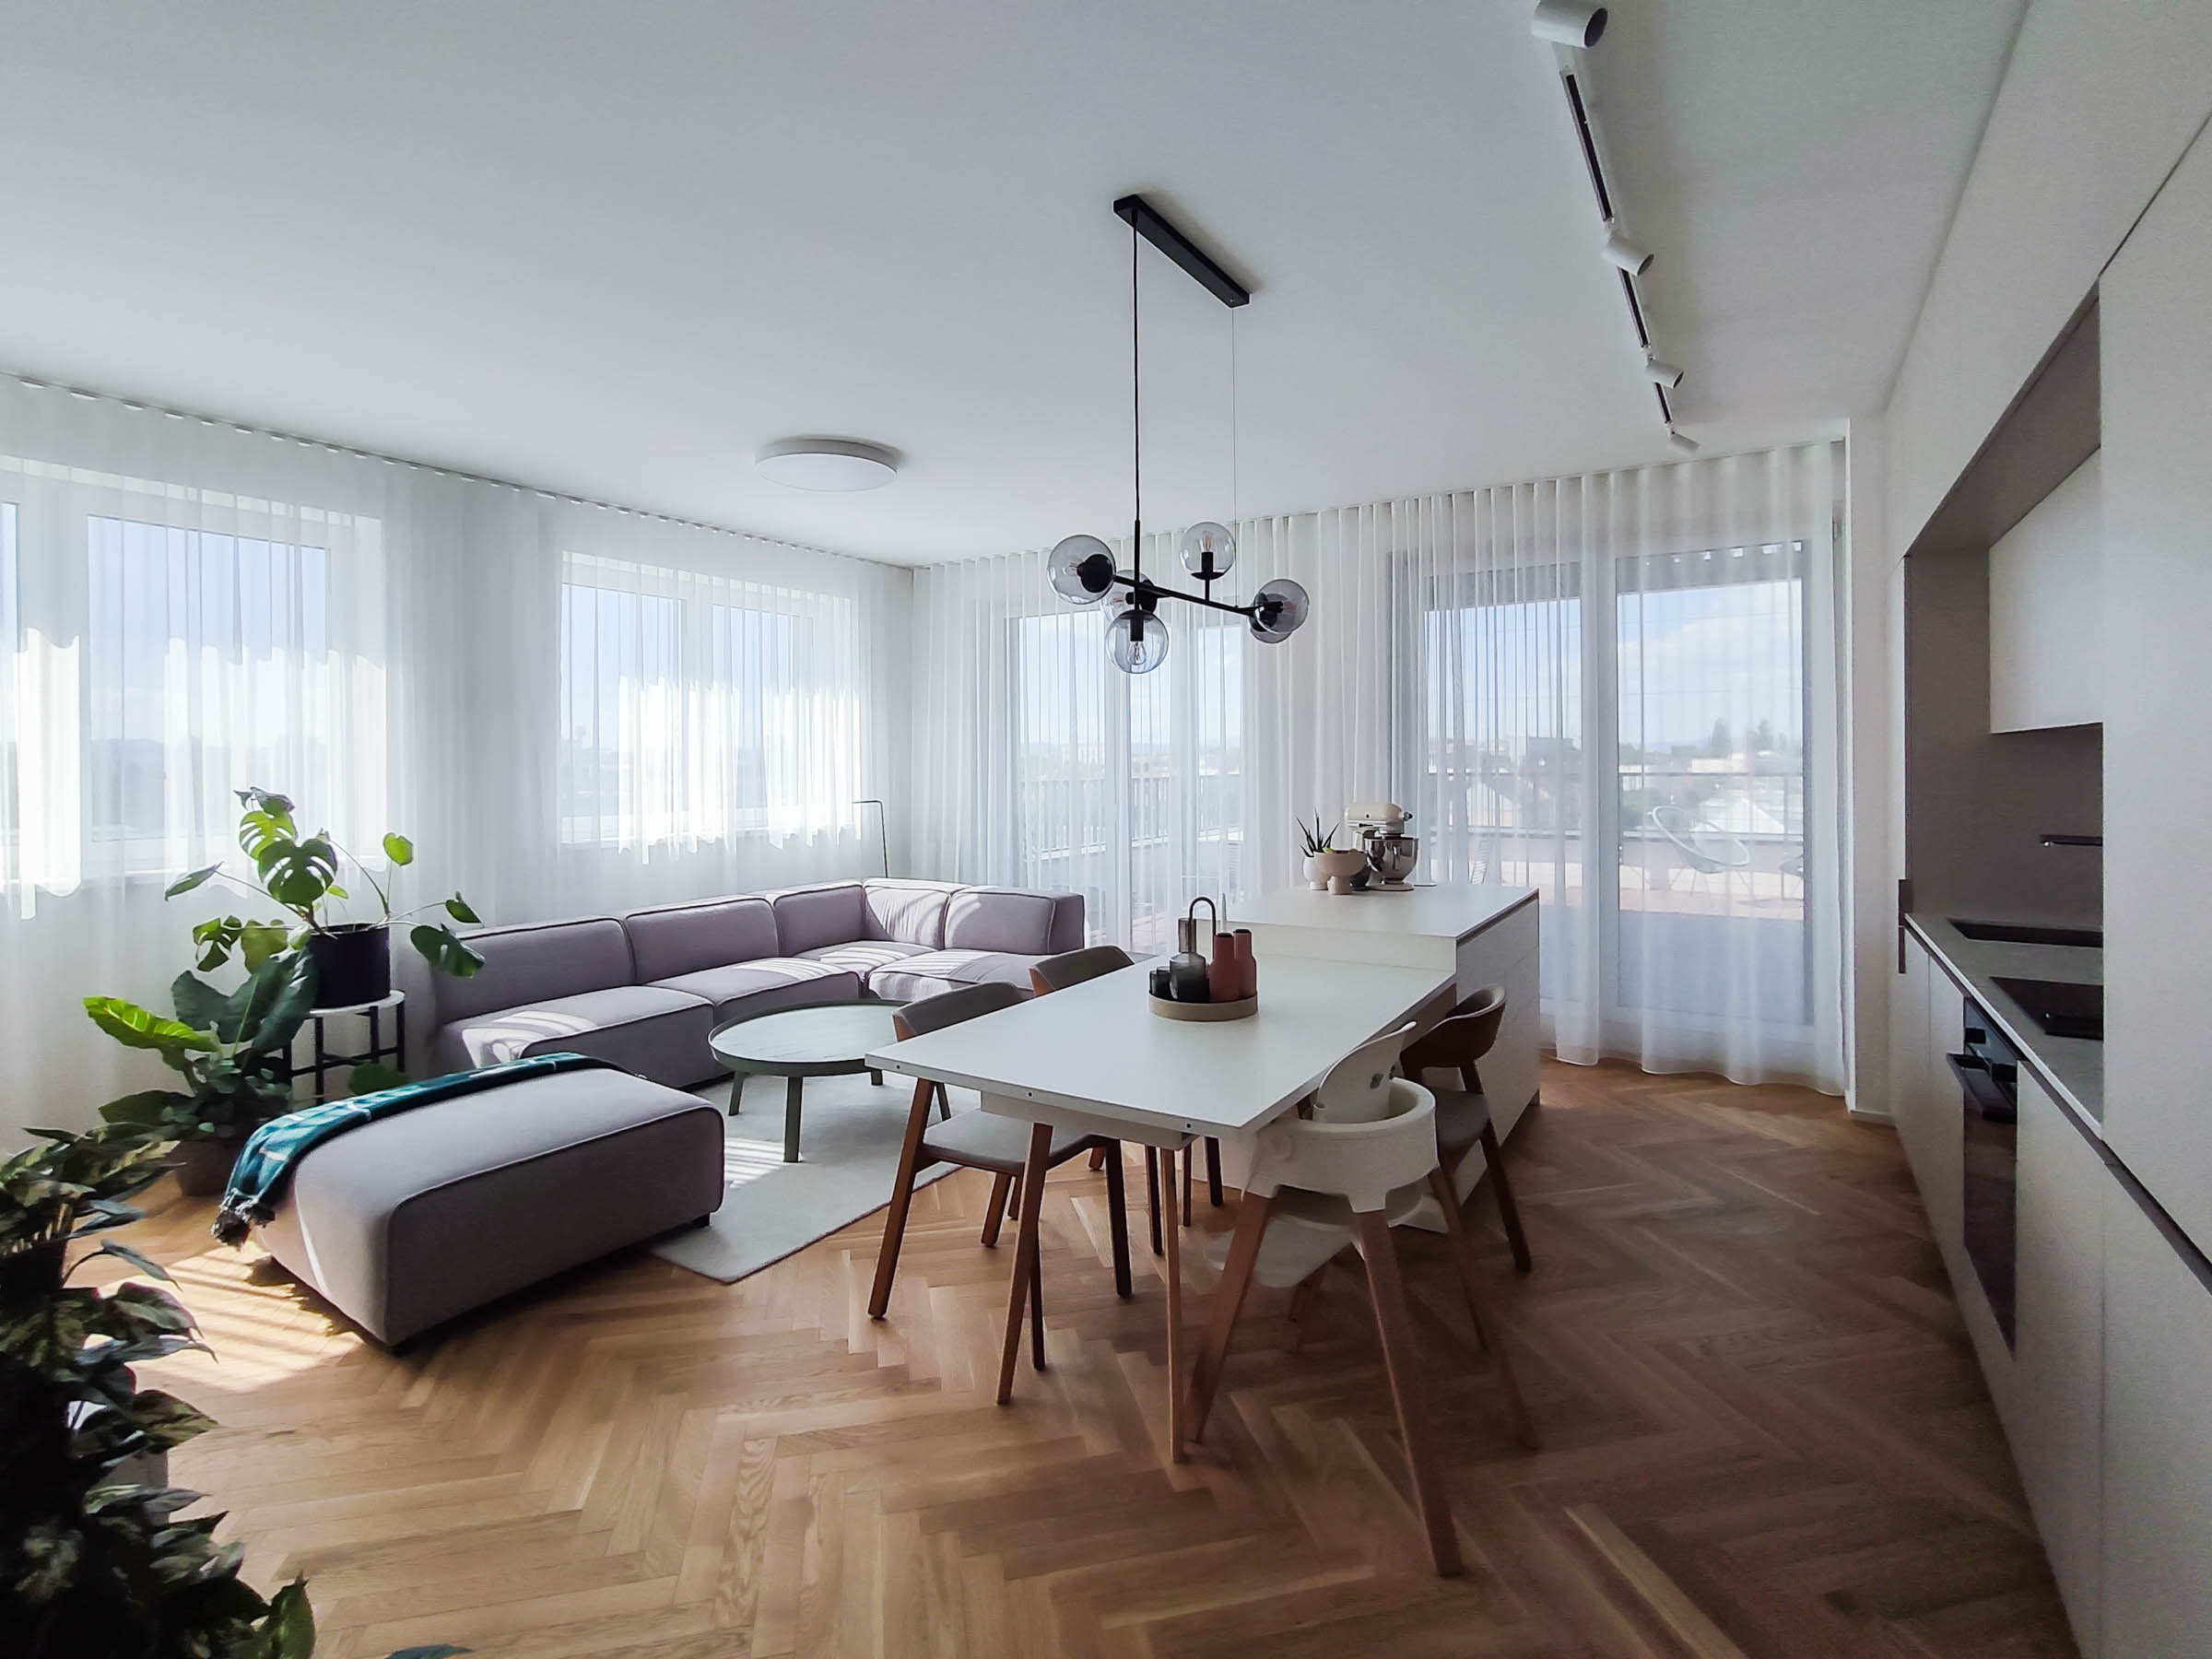 interier 3-izboveho bytu, denna zona, presvetleny byt, zaclony, dizajnovy mobiliar, VAUarchitects